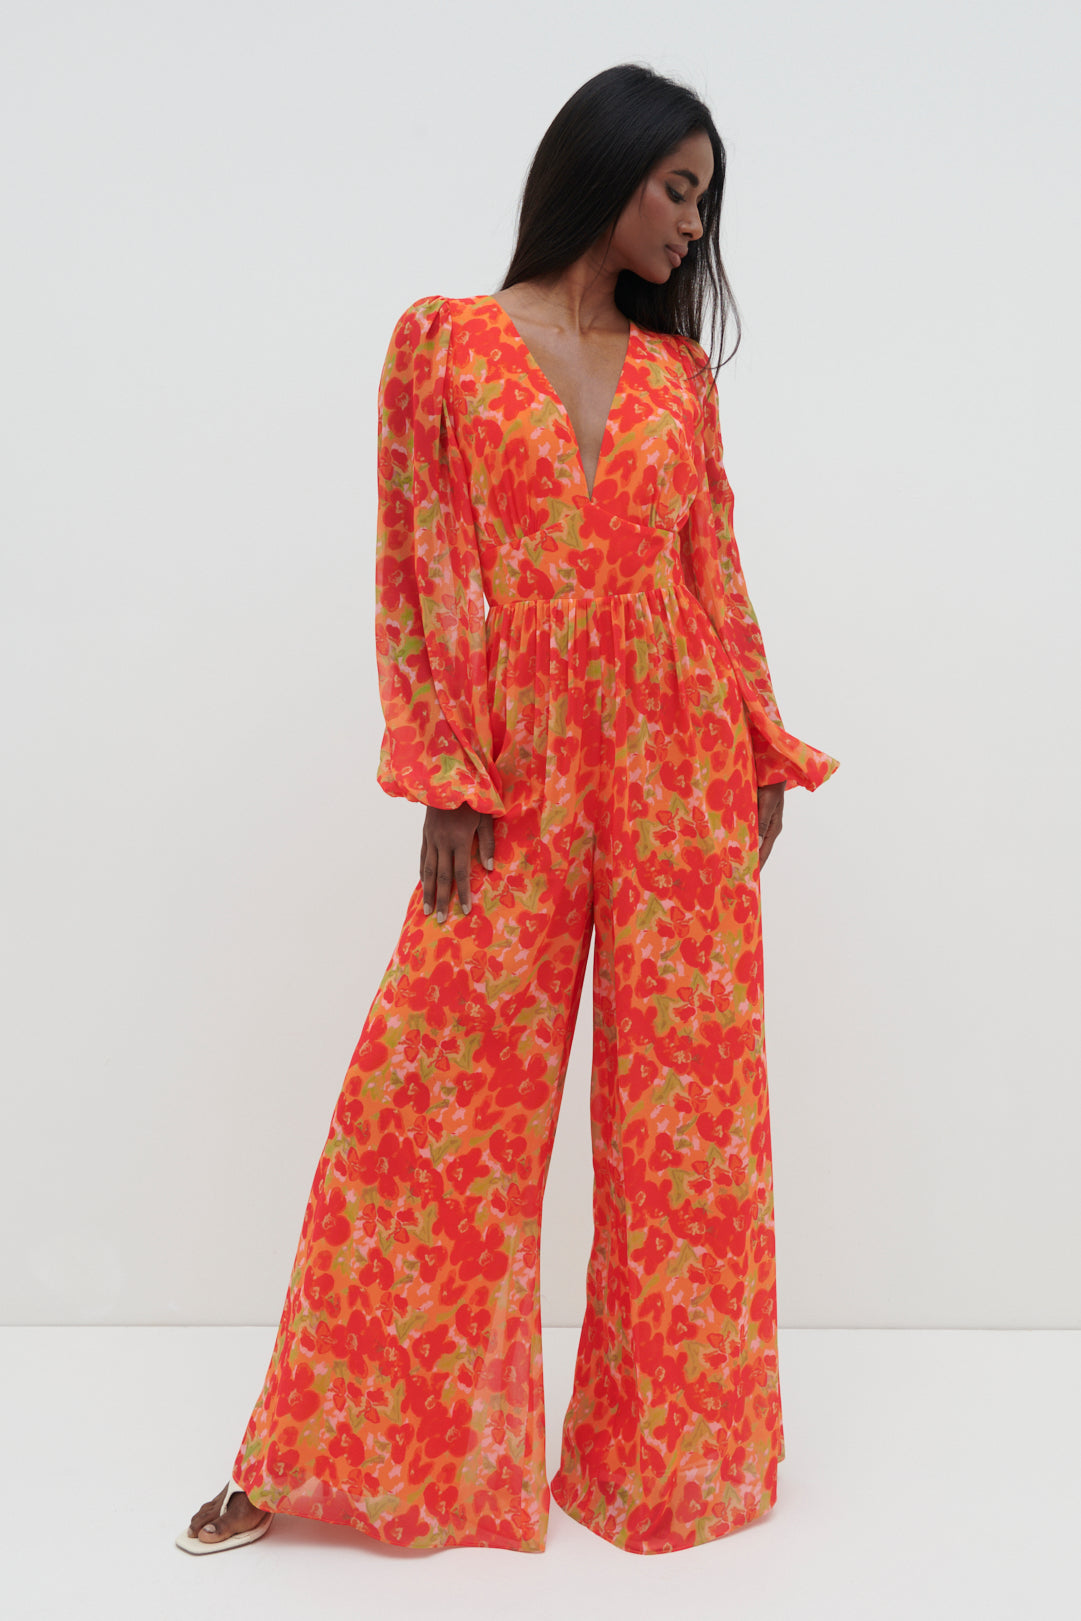 Olivette Jumpsuit - Red and Orange Floral, 14